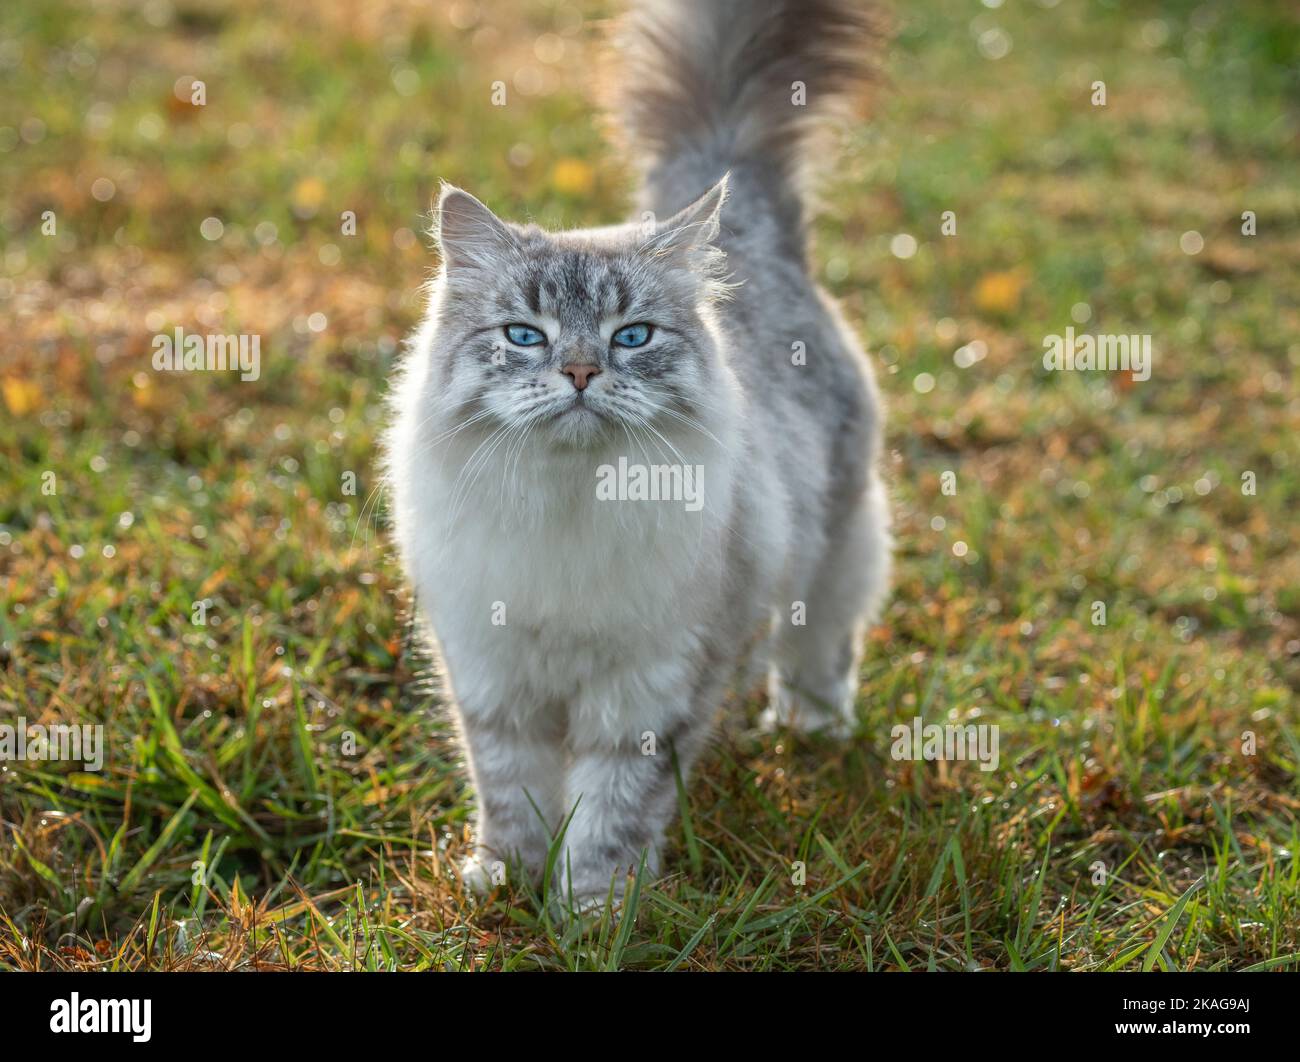 La femelle de chat sibérien marche sur une pelouse en herbe verte Banque D'Images